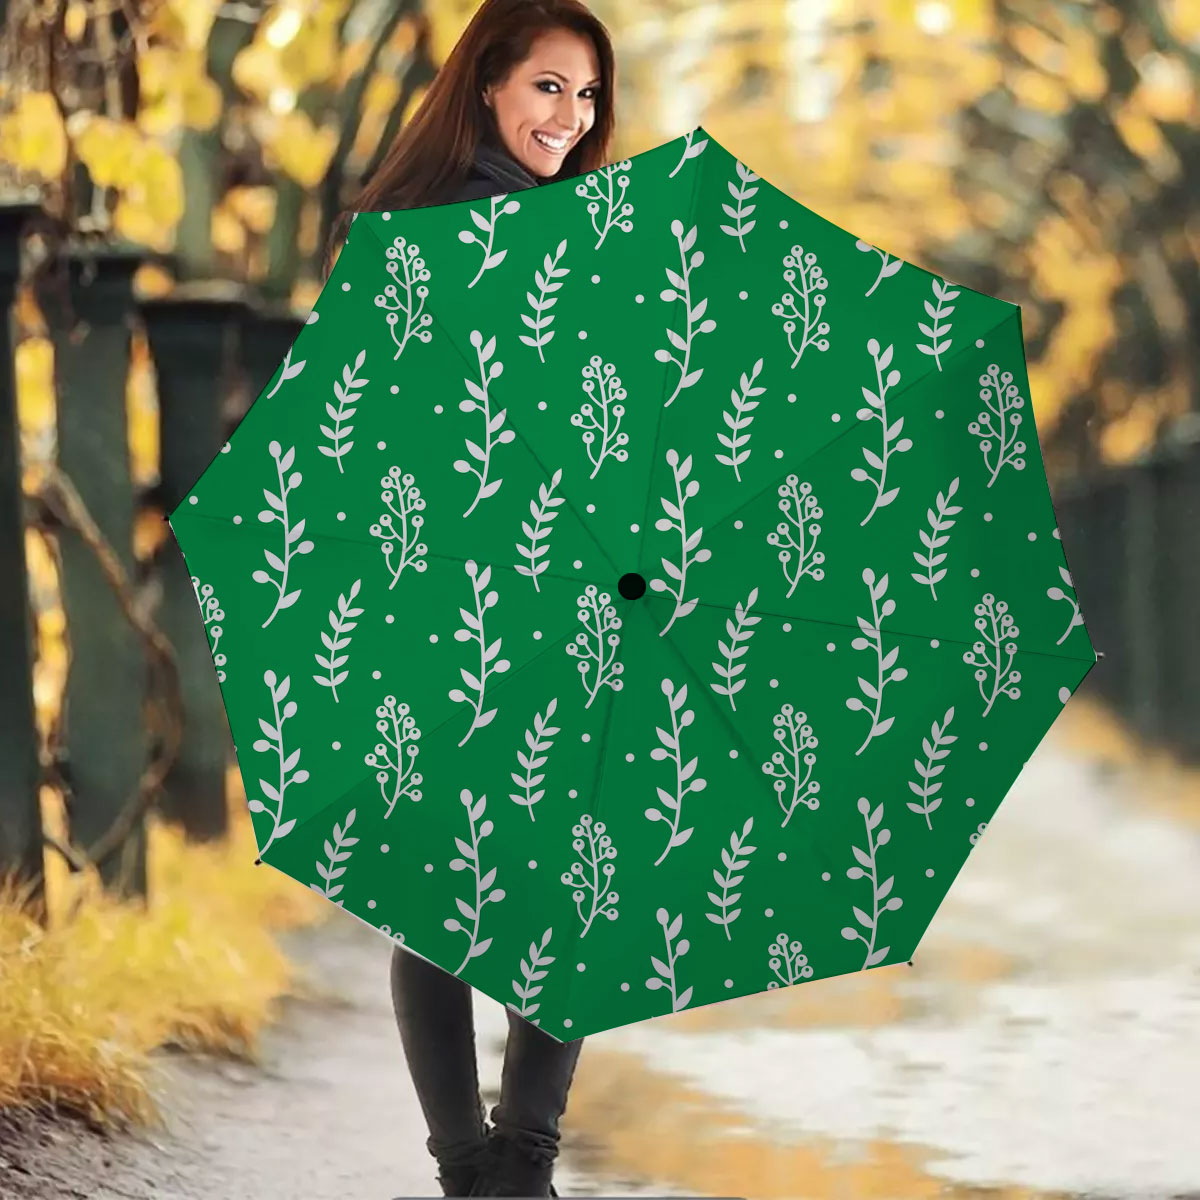 Christmas Mistletoe And Leaf, Mistletoe Clipart On Green Umbrella